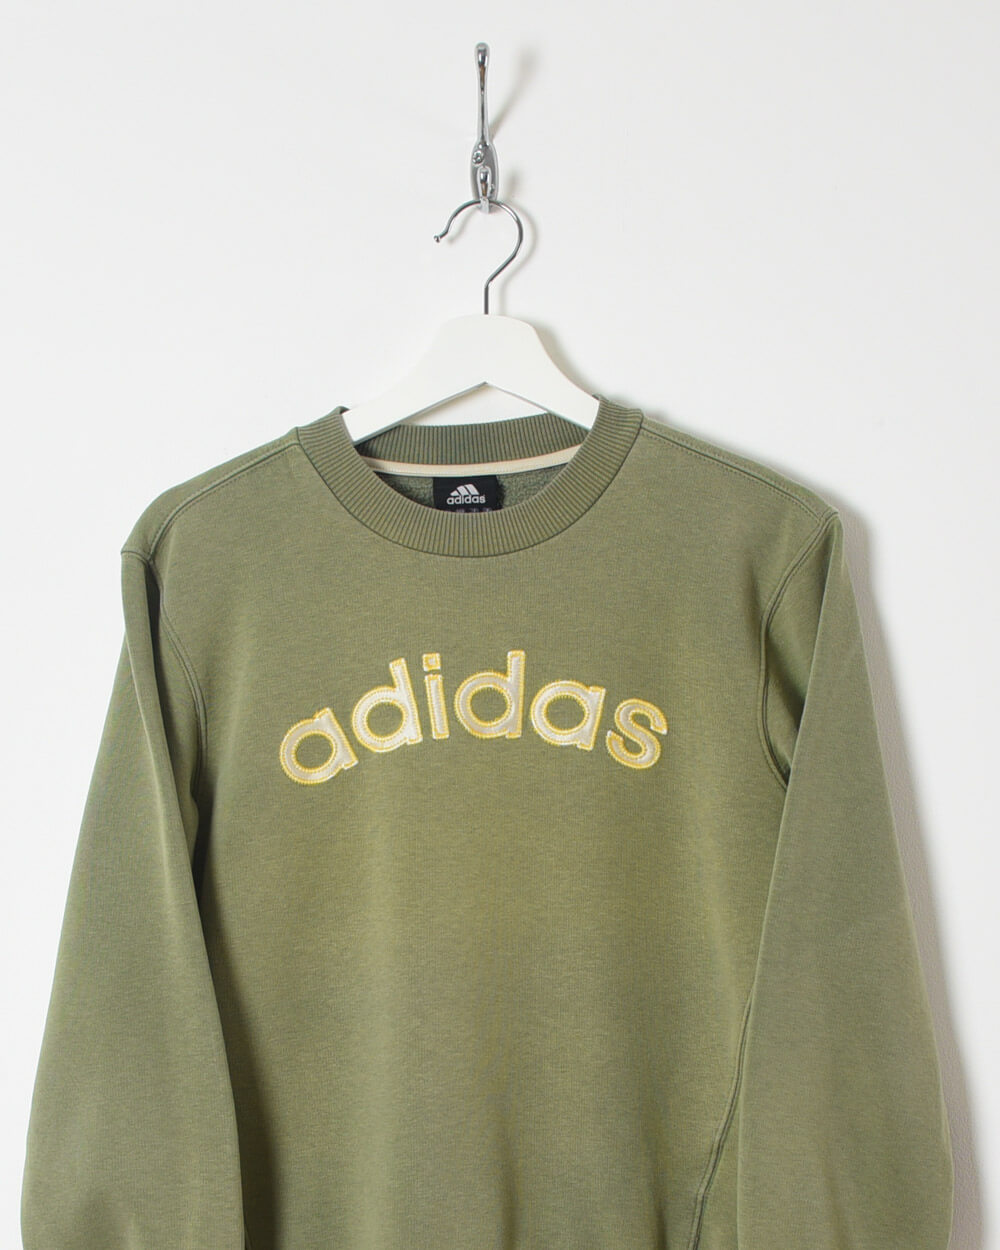 Adidas Sweatshirt - X-Small - Domno Vintage